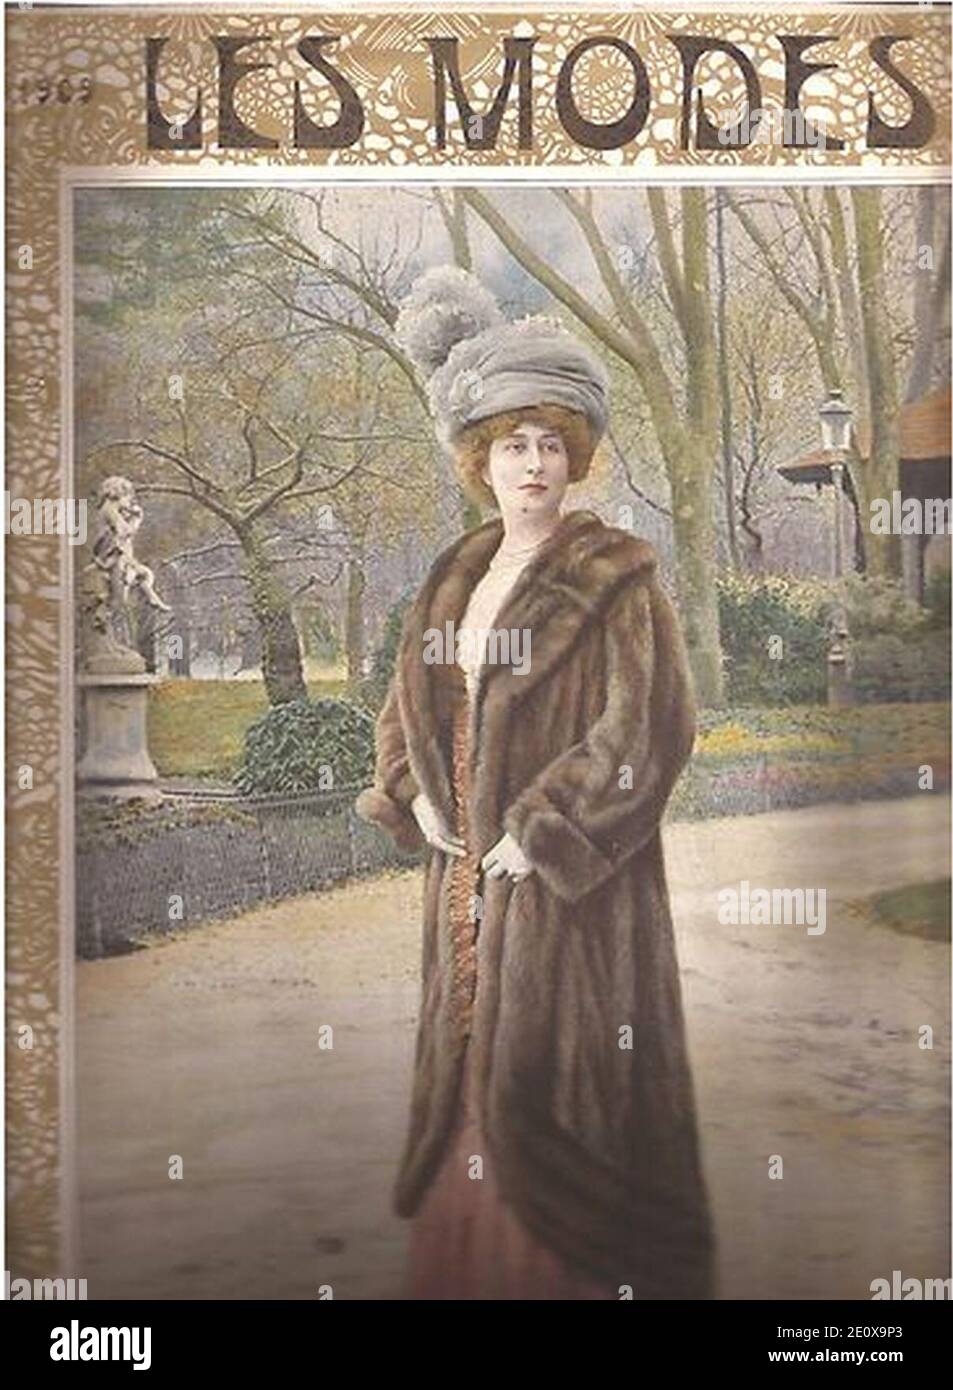 Les Modes 1909, sable fur coat. Stock Photo